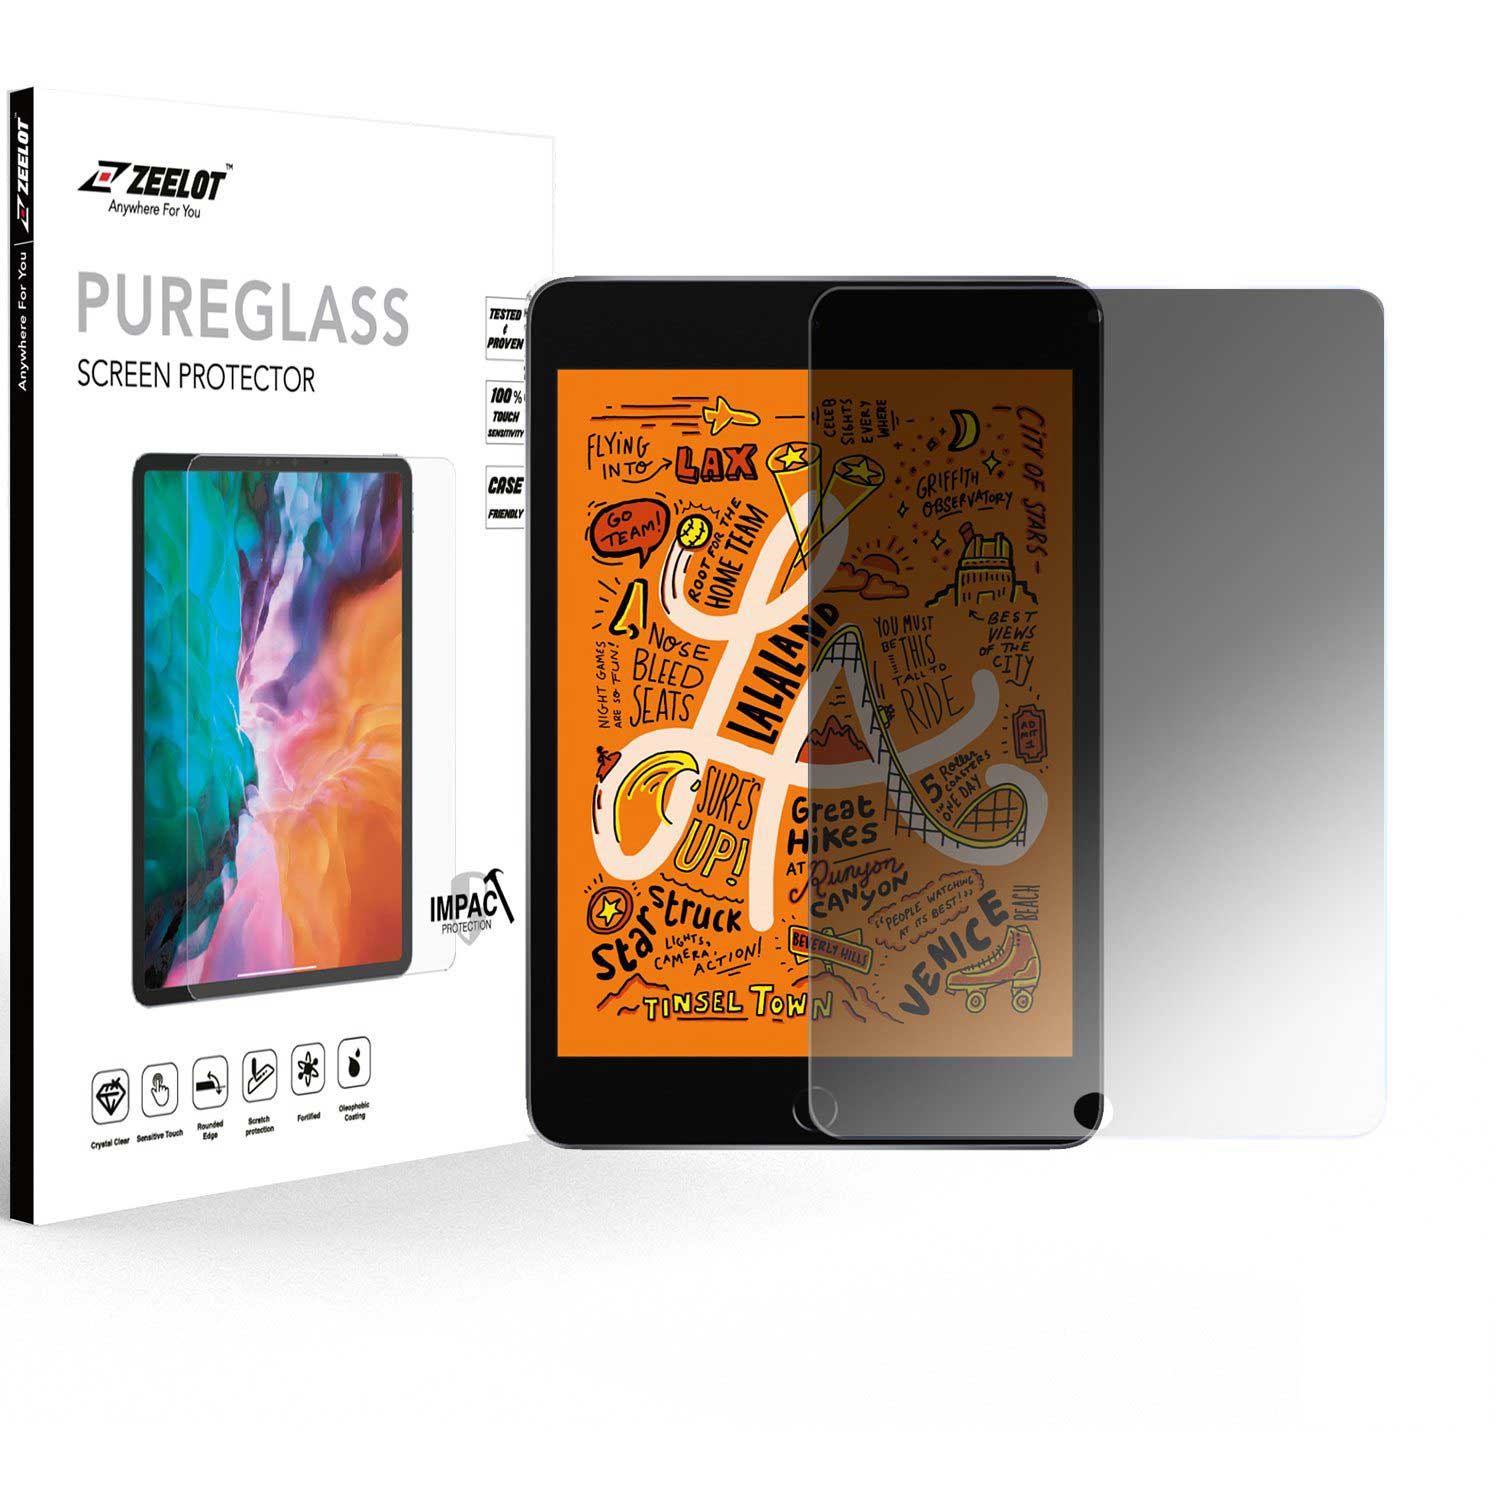 ZEELOT PureGlass 2.5D Privacy Screen Protector for iPad Mini 5/4 7.9" (2019-2015) Default Zeelot 